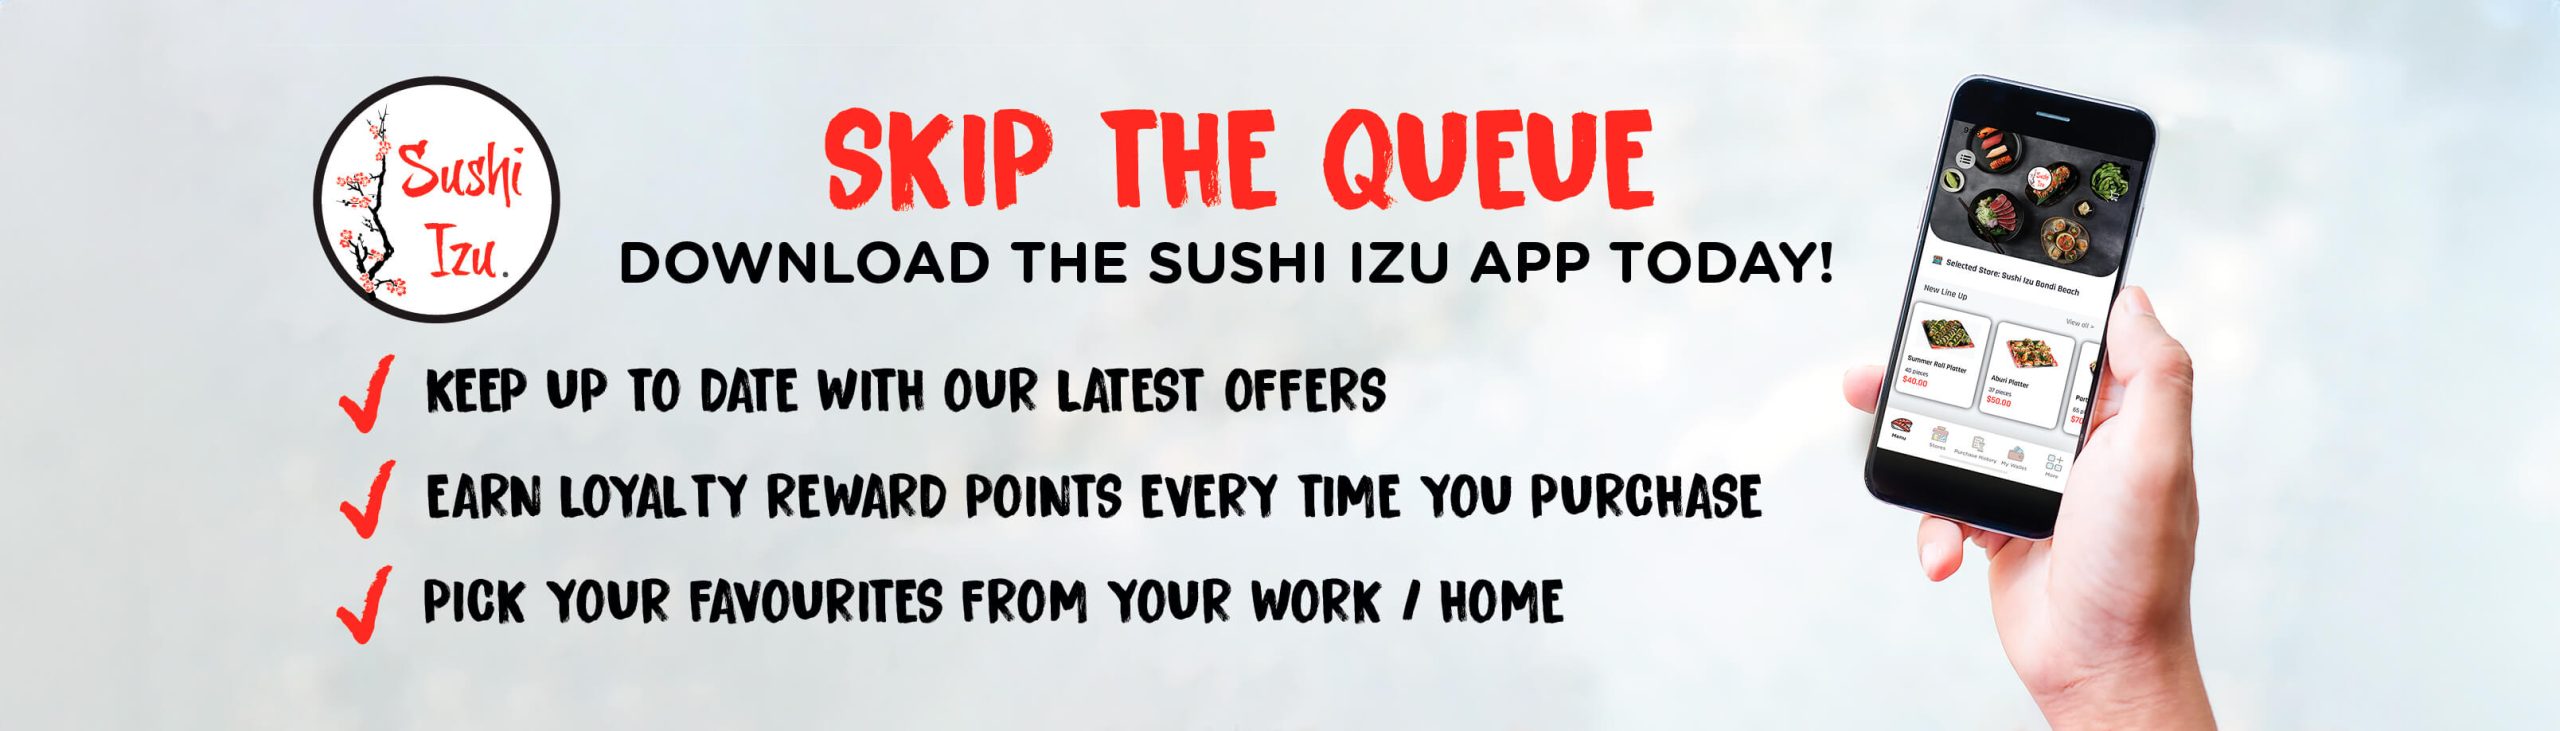 Skip the Queue - get the App